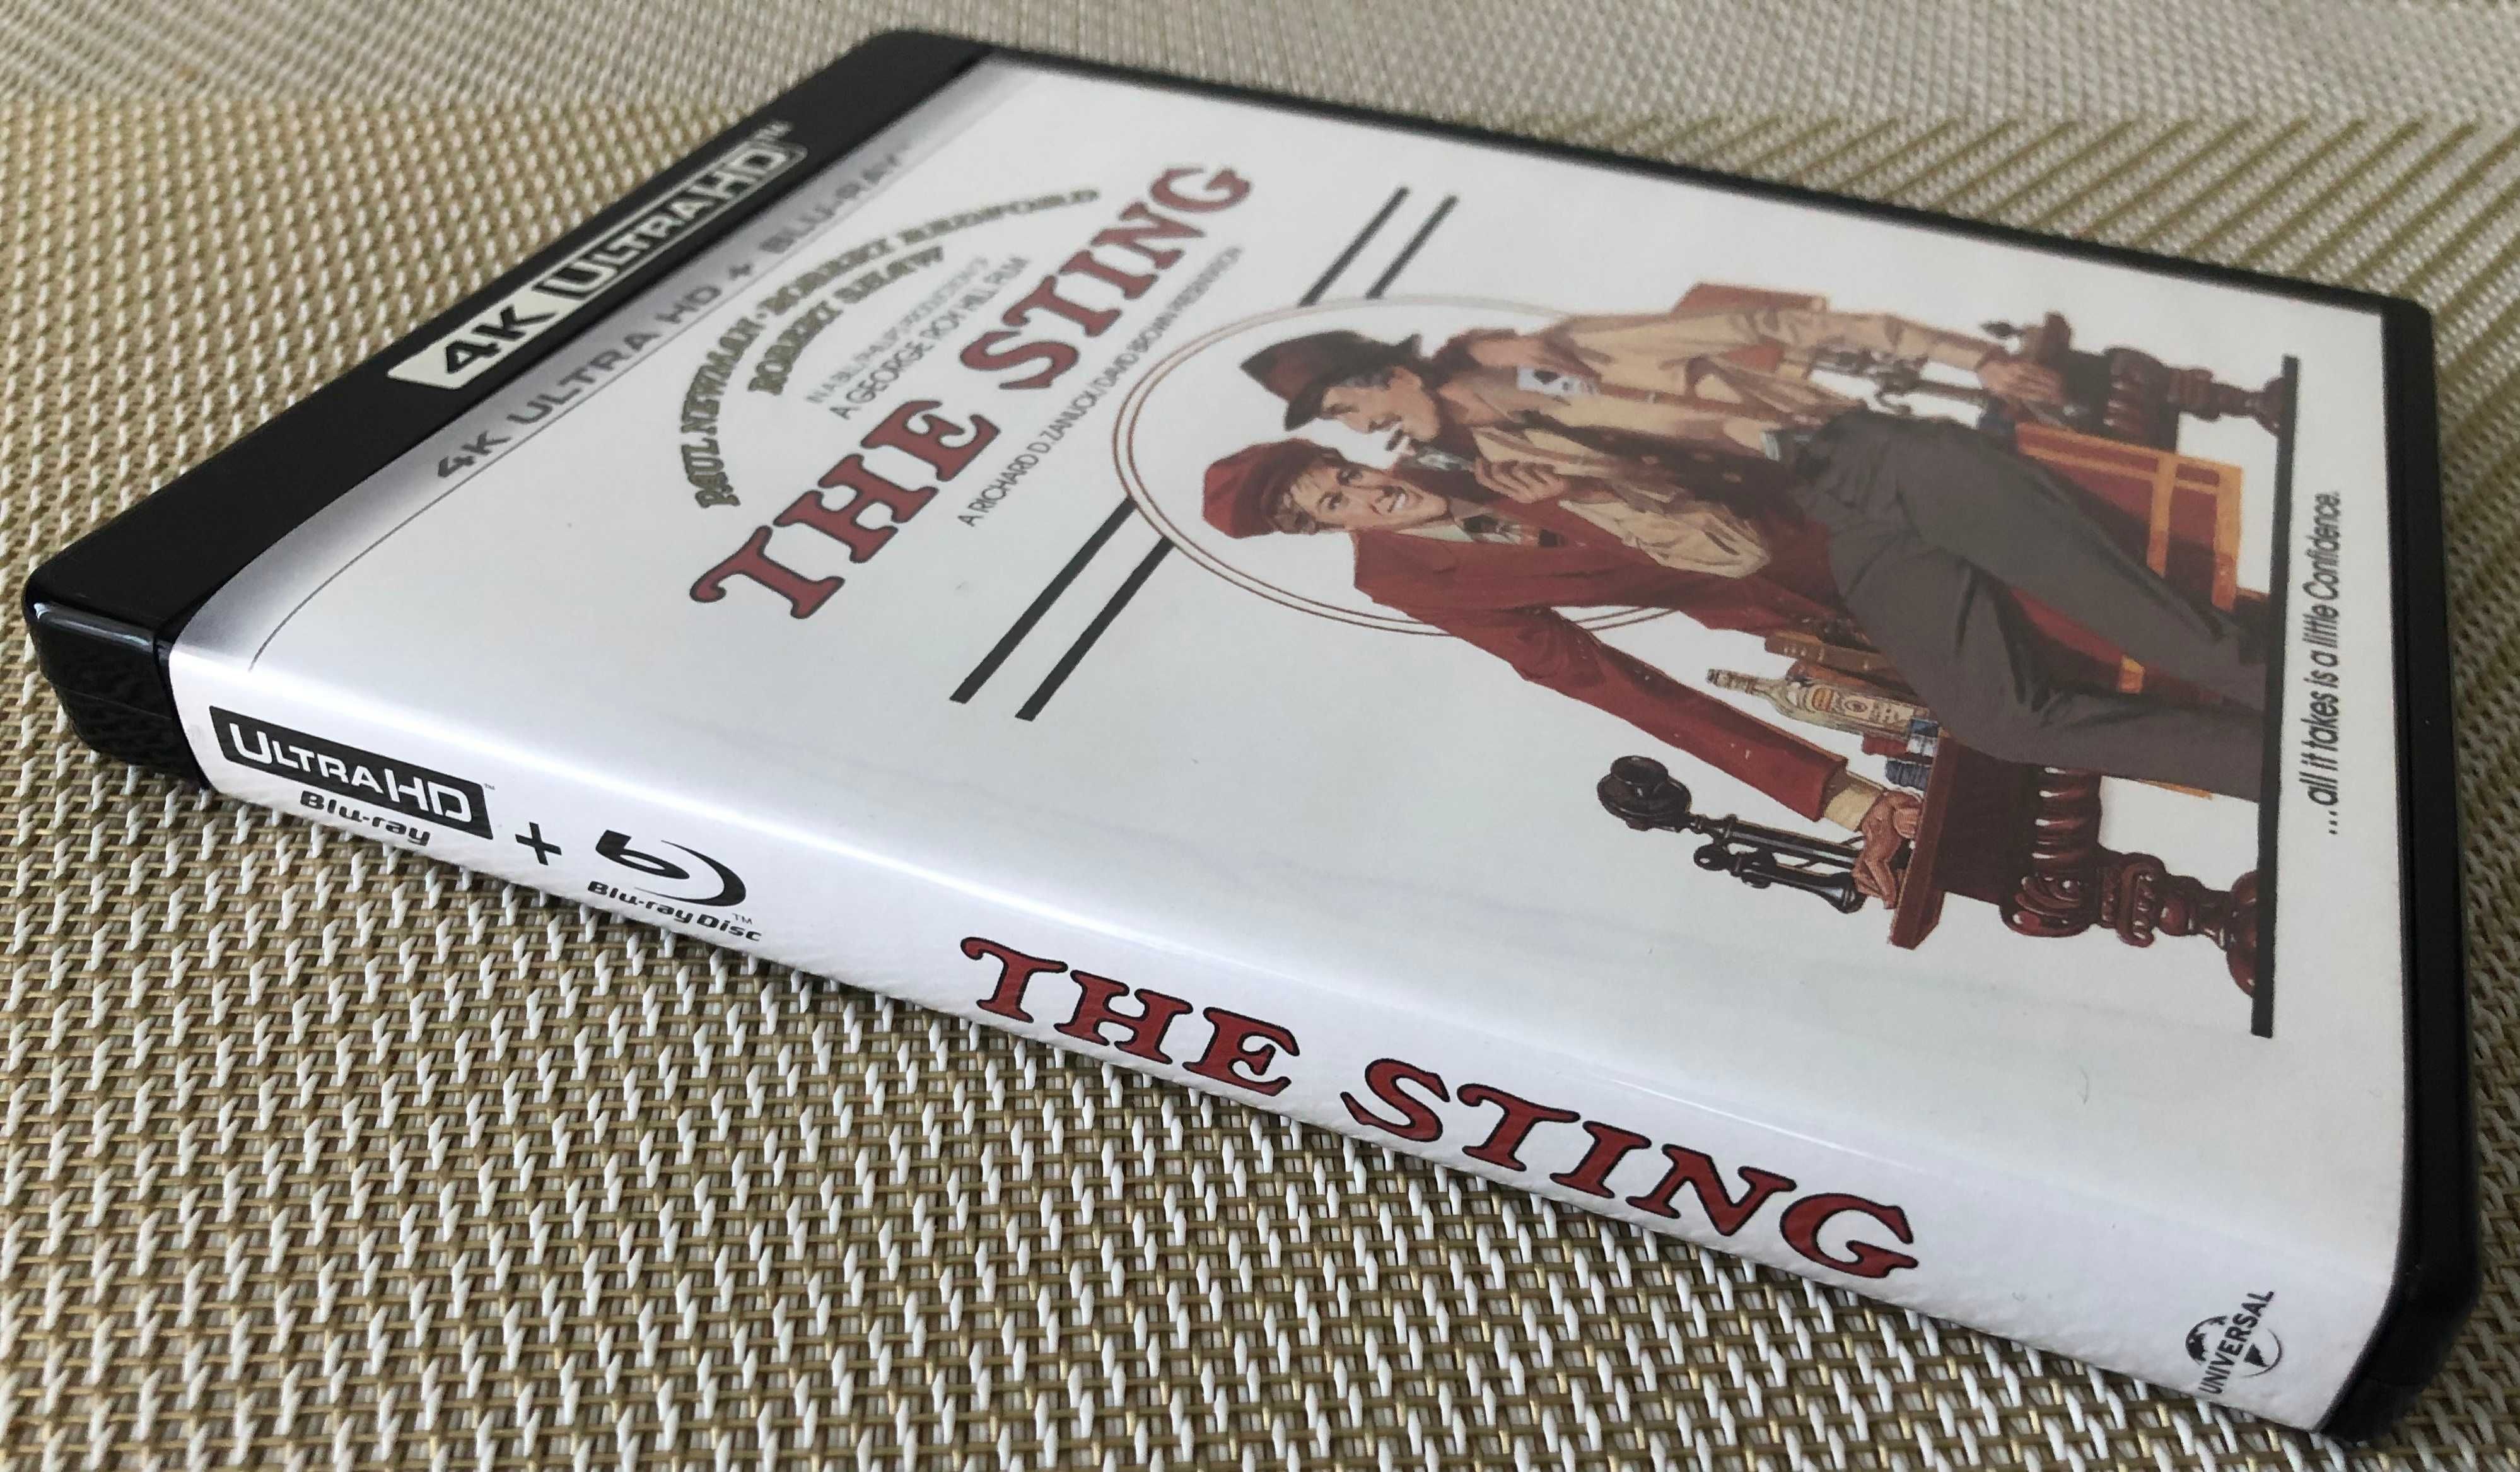 Żądło - The Sting (1973) 4K Blu-ray  brak pl